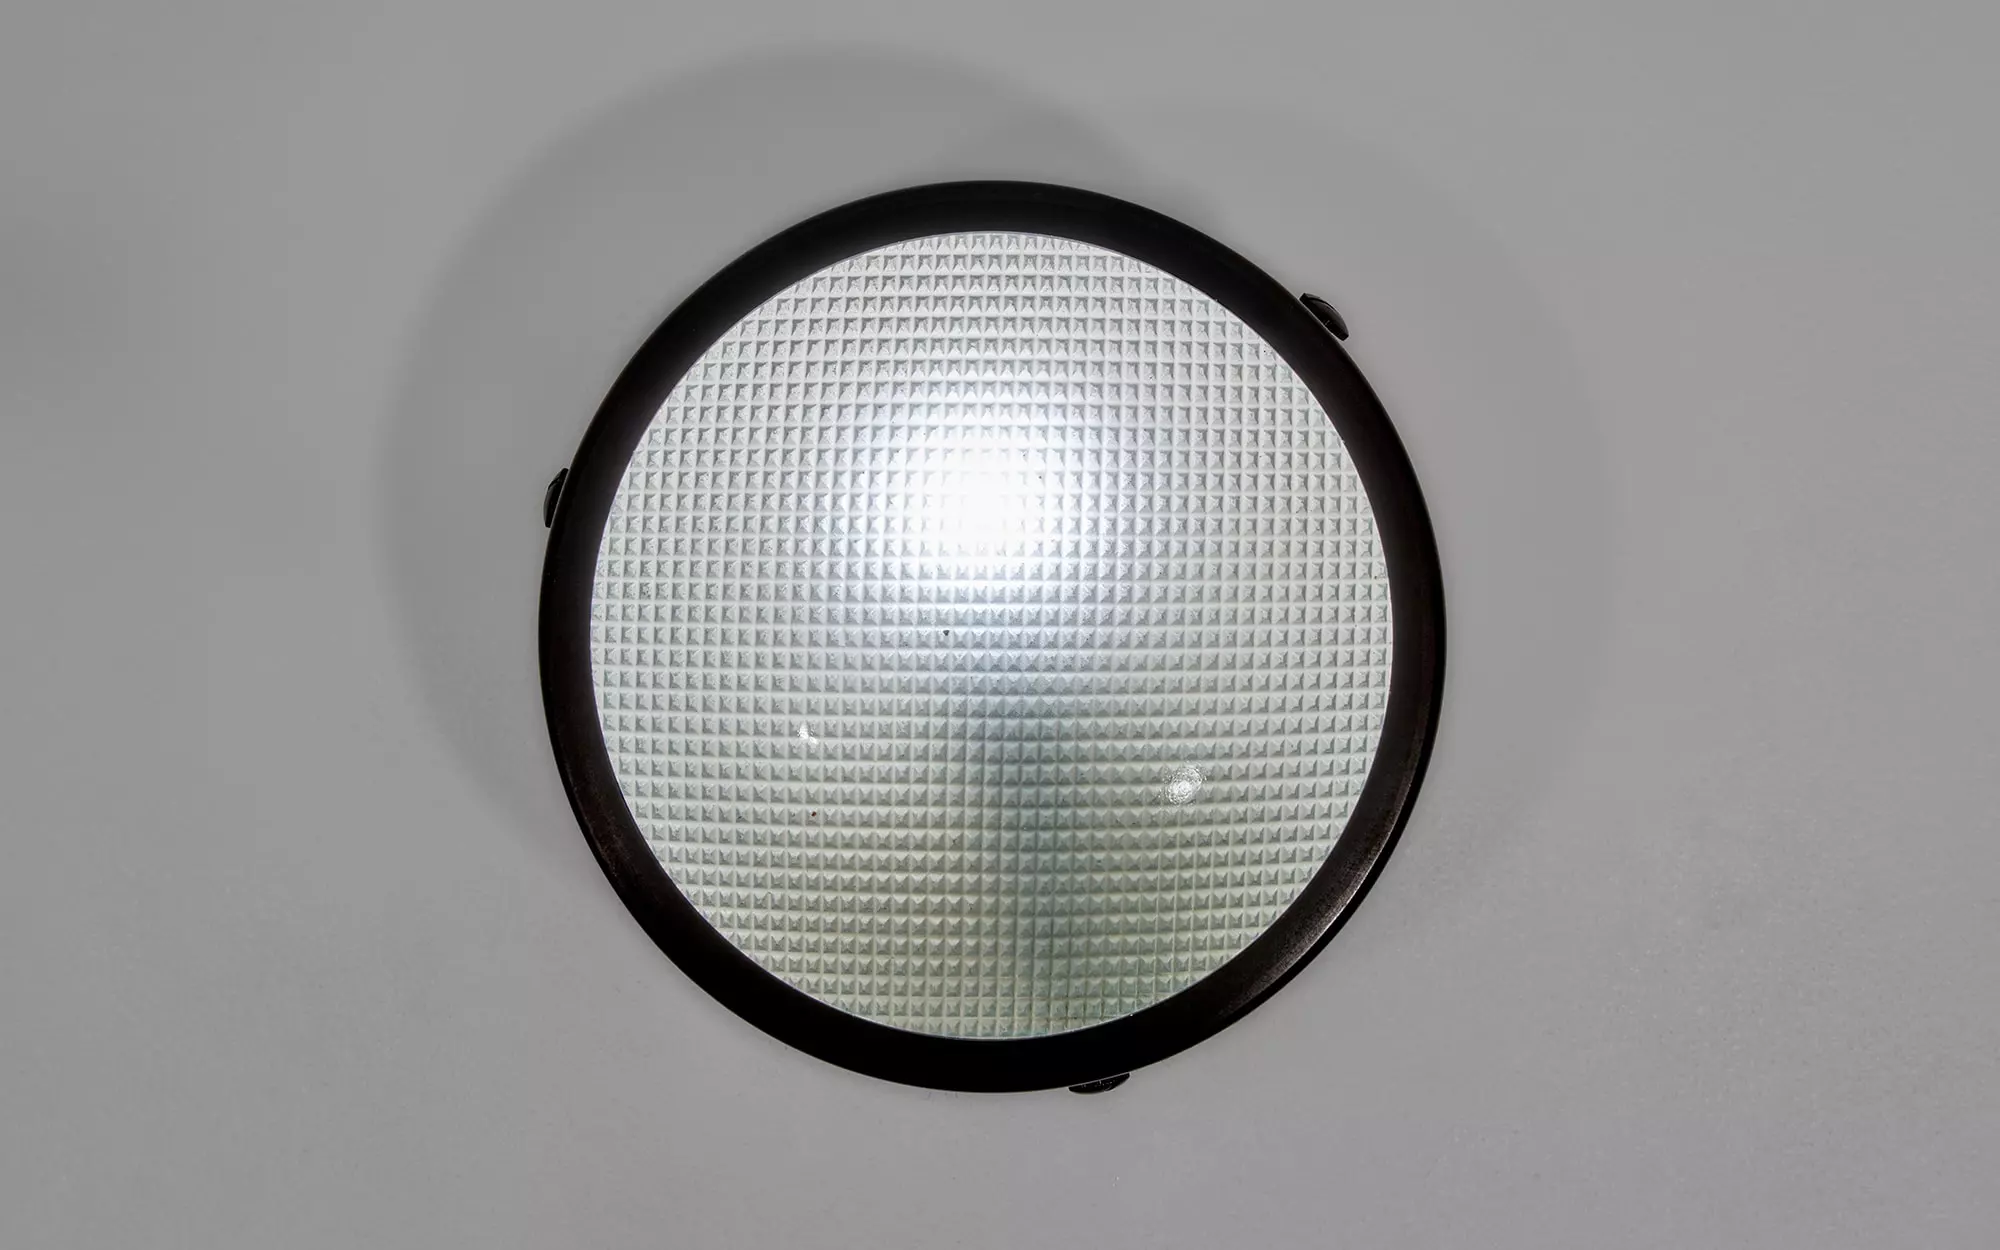 3001/16 - Gino Sarfatti - Table light - Galerie kreo